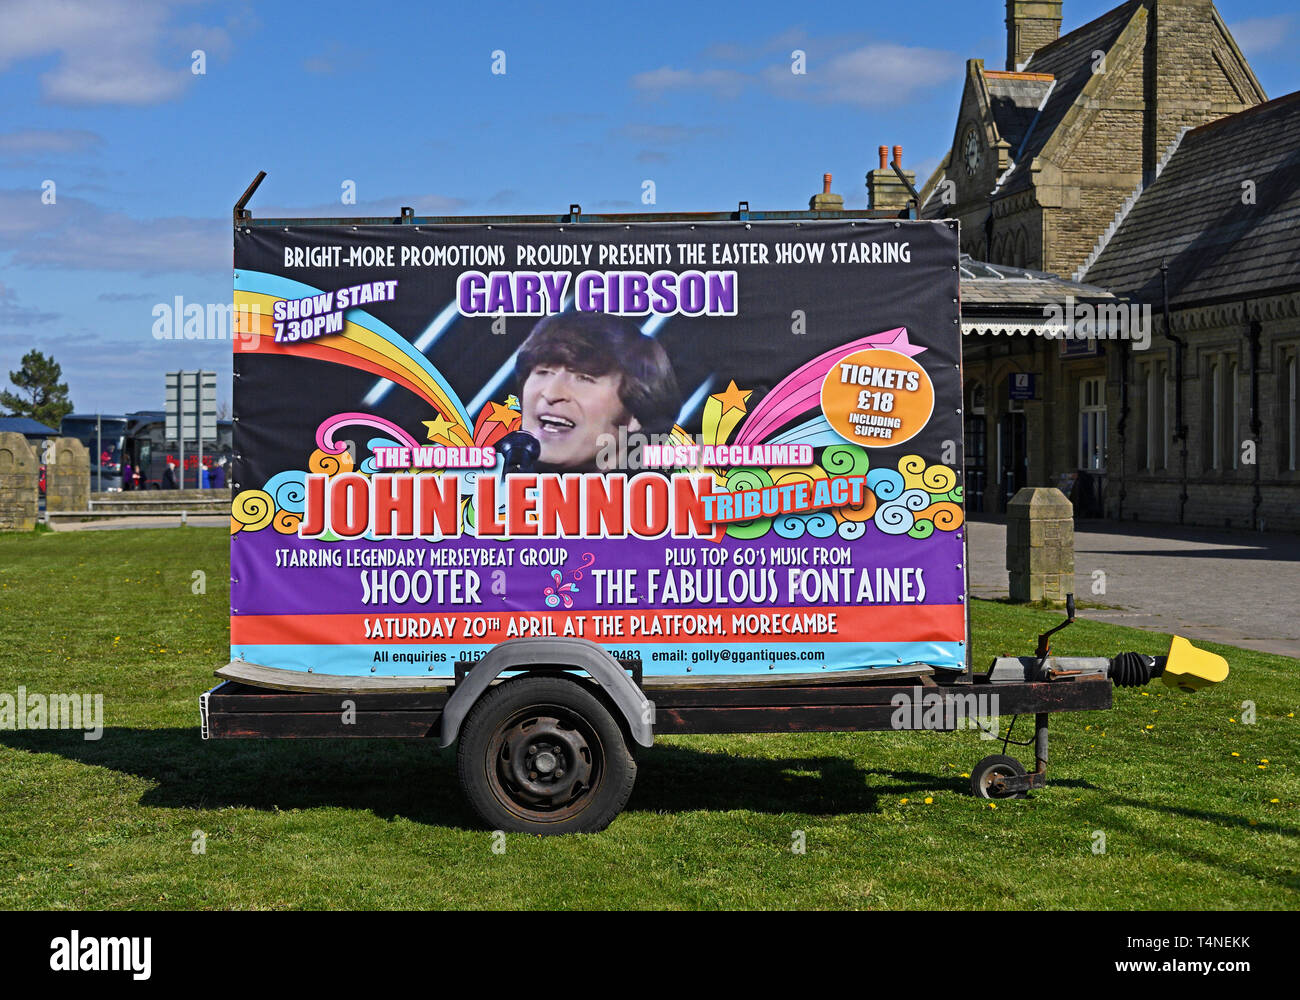 Cartellone pubblicitario di telefonia mobile. Gary Gibson il mondo più acclamato John Lennon tributo atto. Marine Drive, Blackpool, Lancashire, Inghilterra, Regno Unito Foto Stock